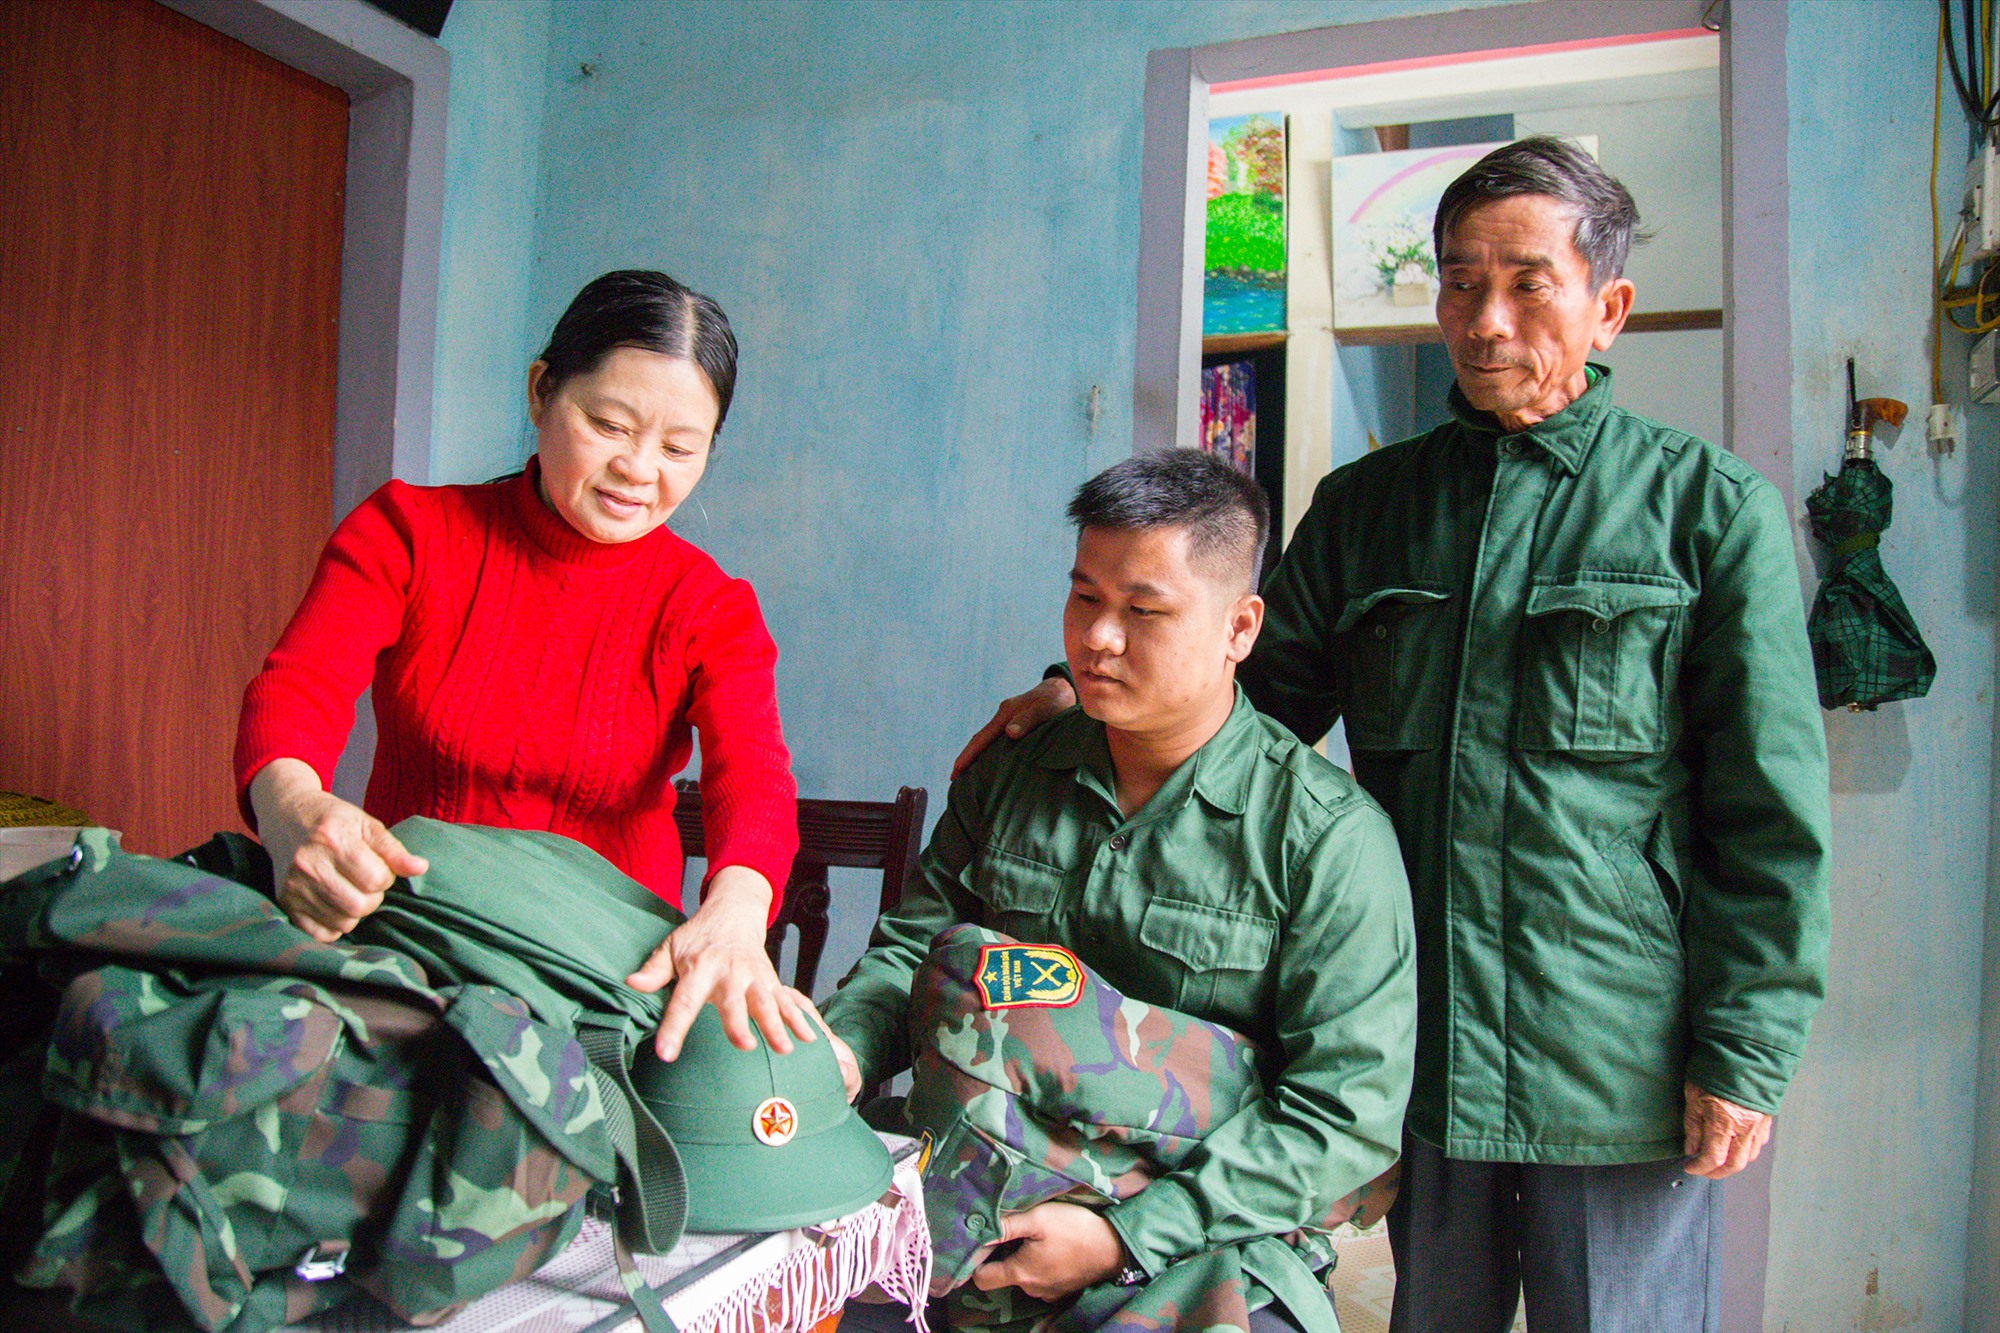 Tân binh Nguyễn Đức Thái Trình (thị trấn Gio Linh) sau khi tốt nghiệp Trường Đại học Luật Huế năm 2021 đã viết đơn tình nguyện nhập ngũ